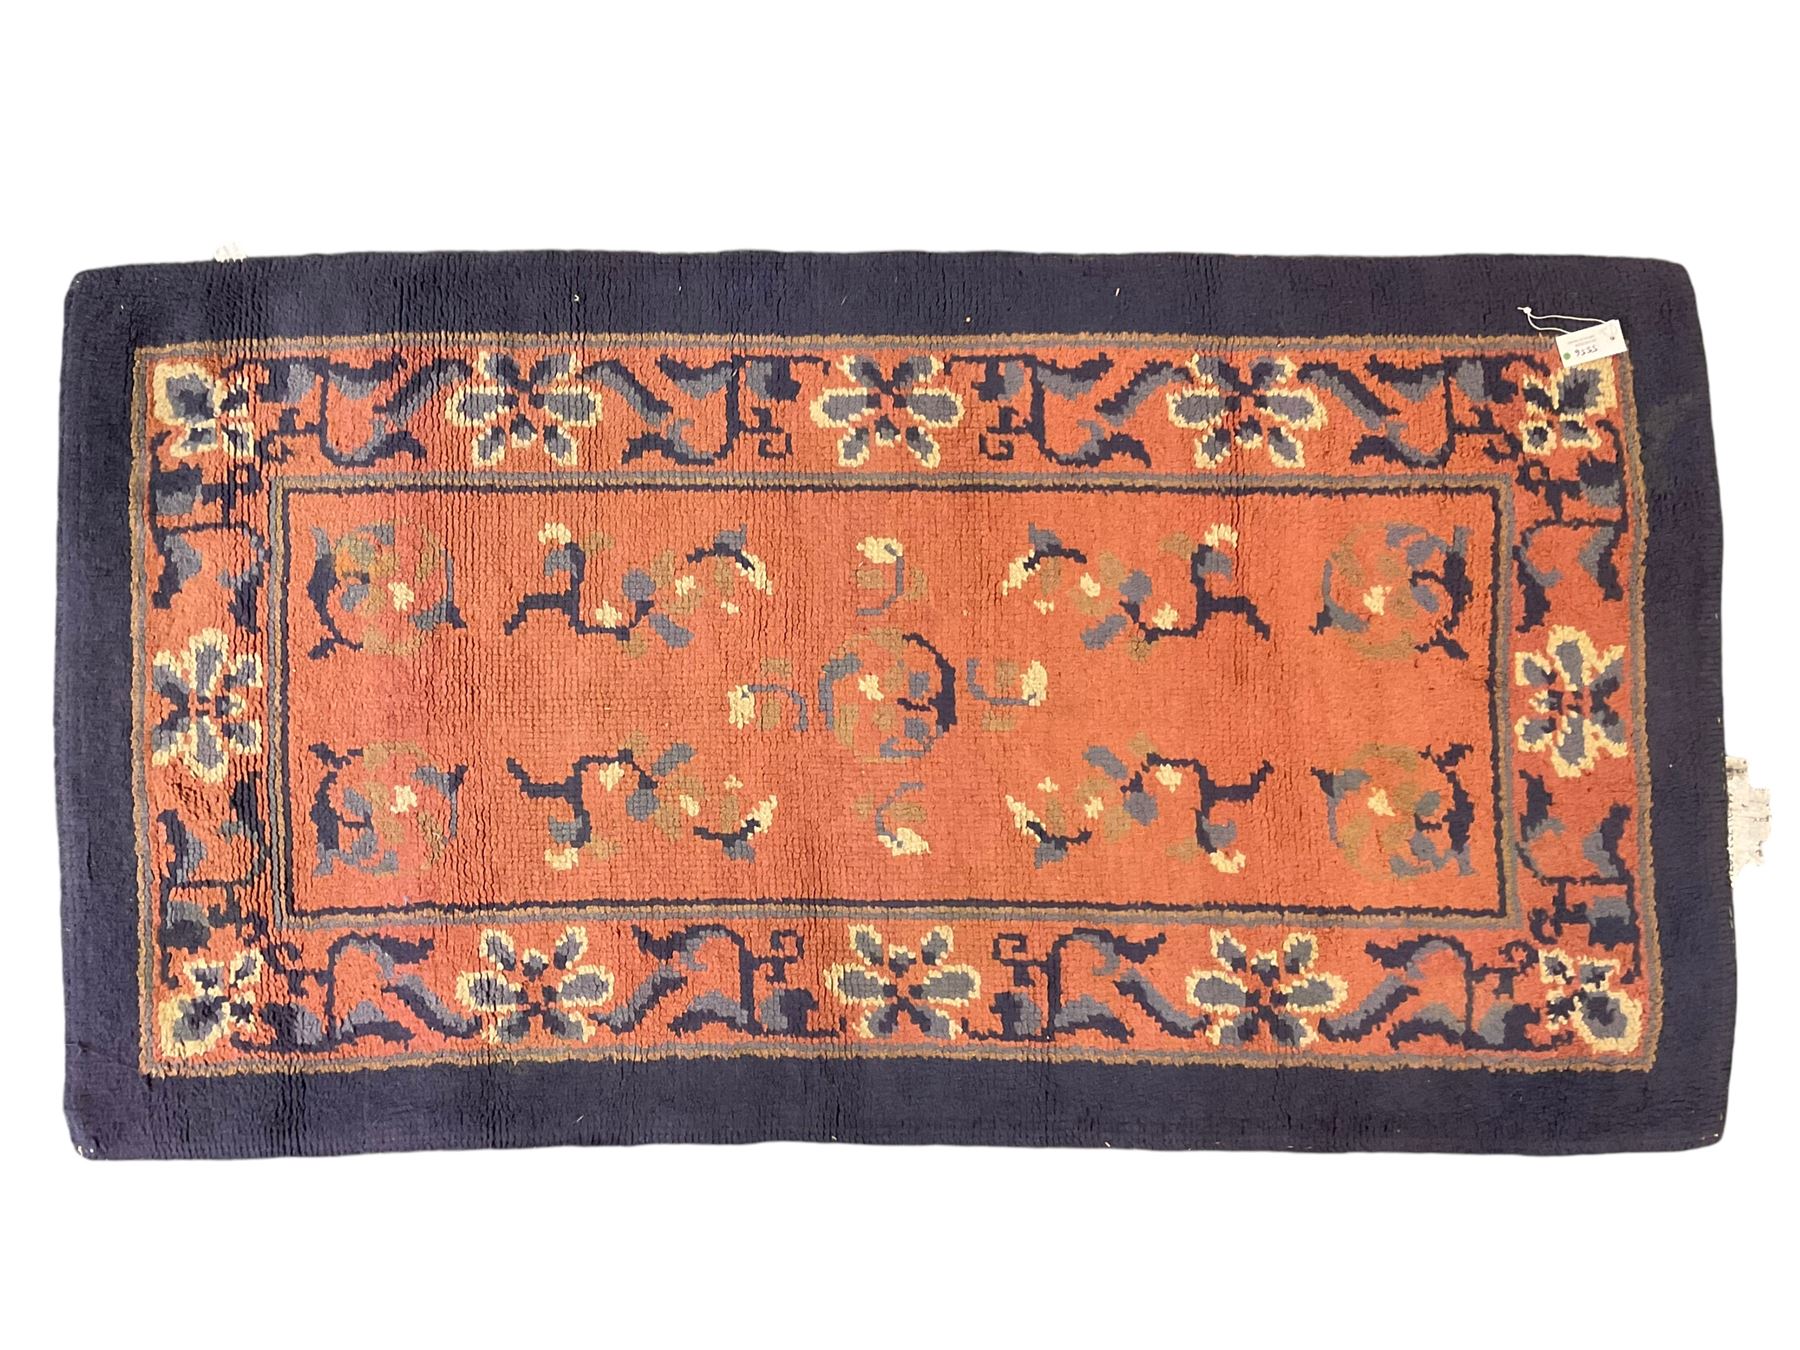 Persian design peach ground rug (169cm x 117cm); Chinese peach ground rug (187cm x 101cm) - Image 3 of 9